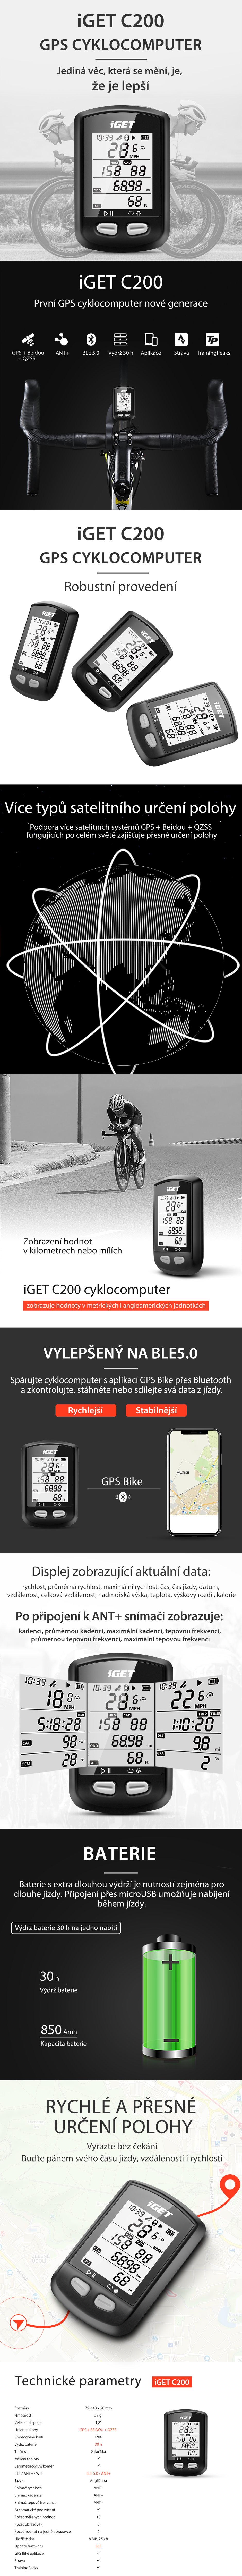 iGET CYCLO C200